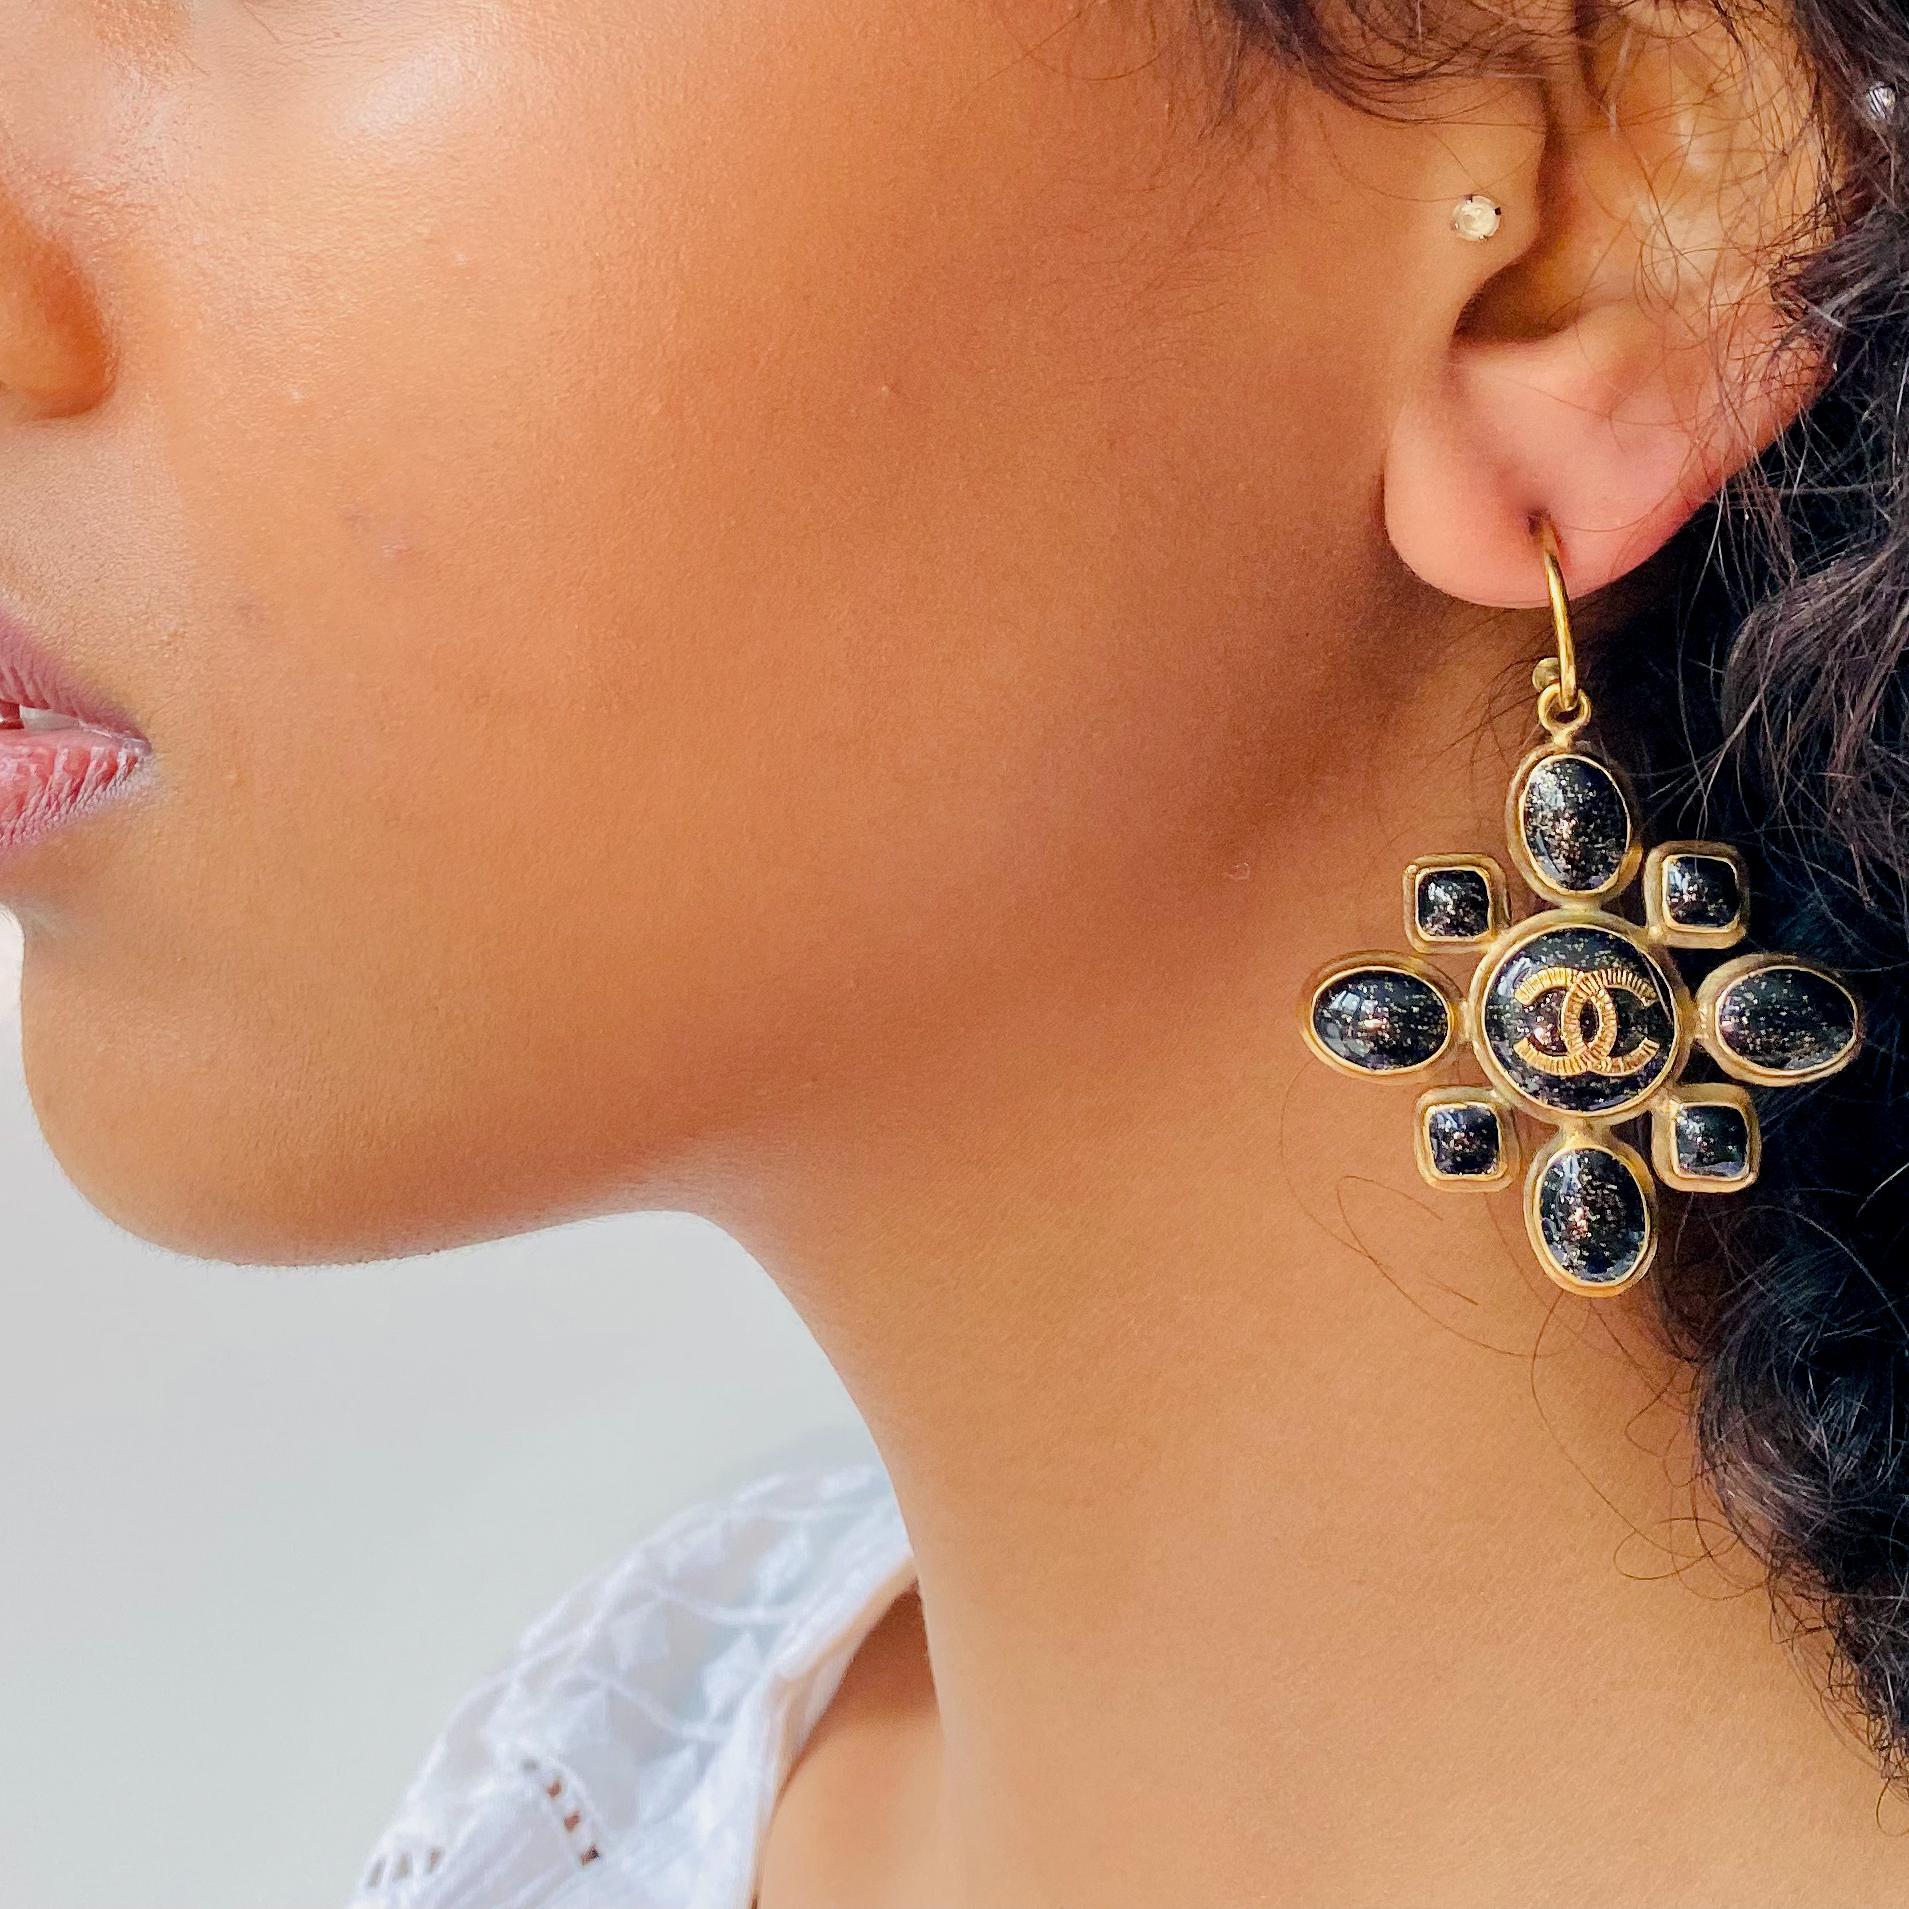 chanel earrings for pierced ears